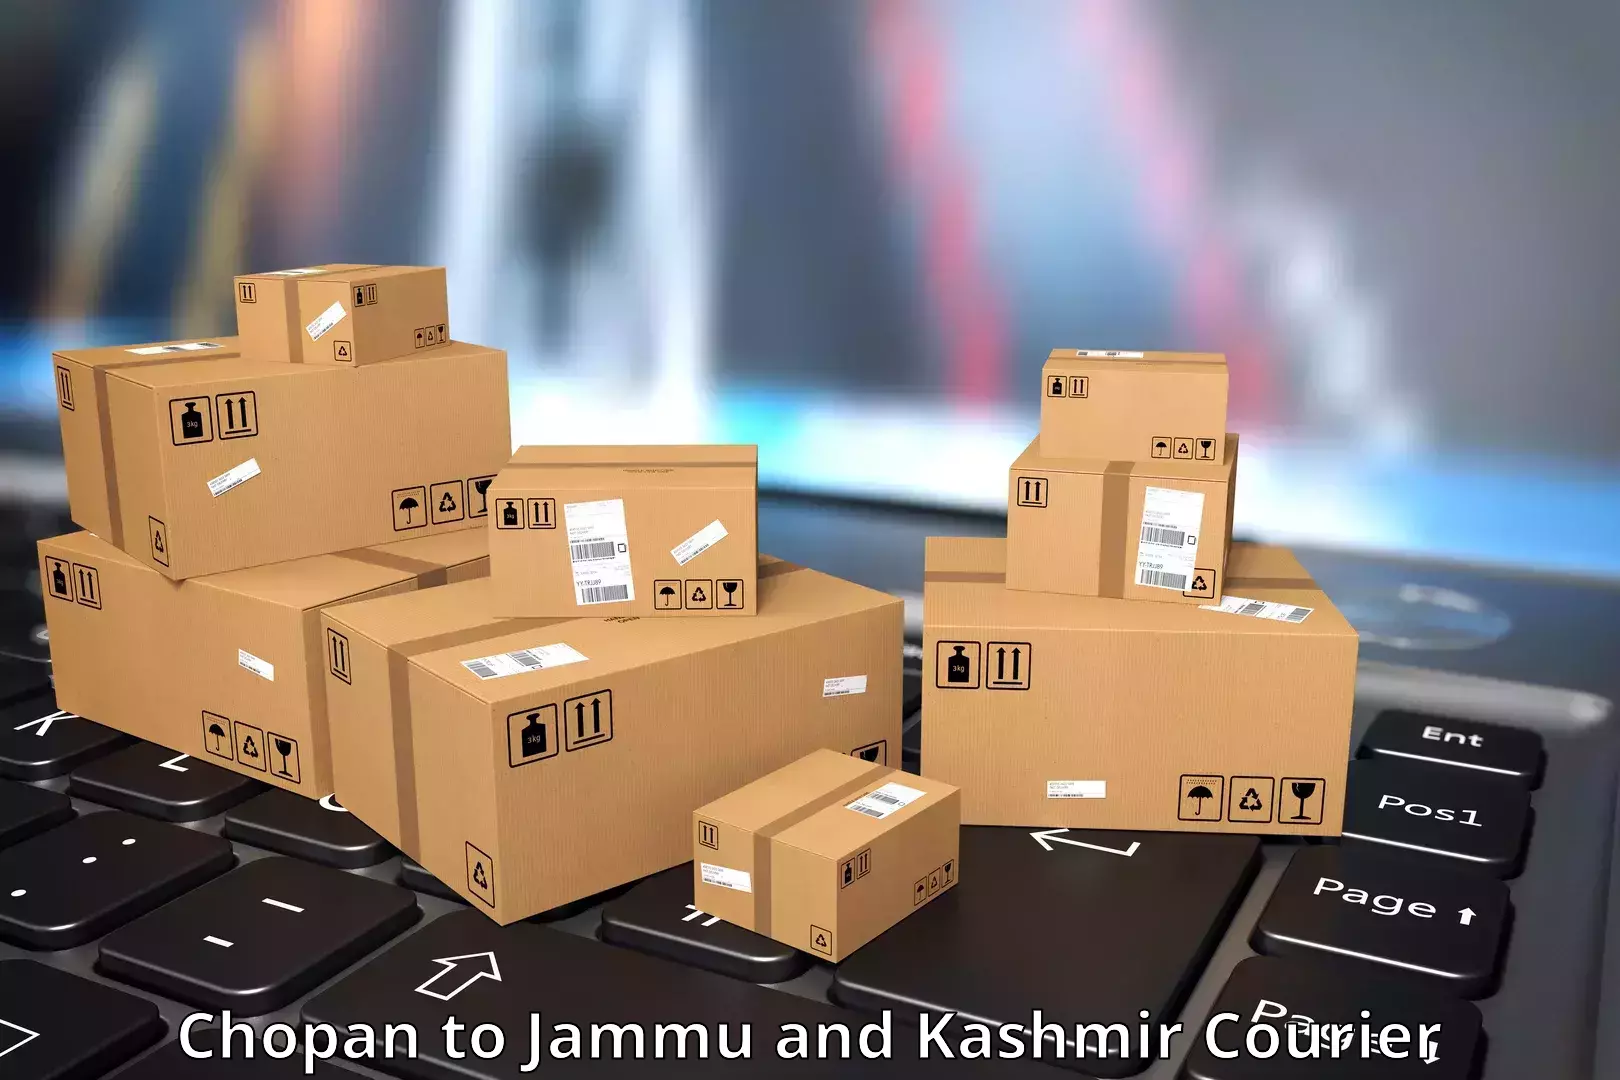 Express courier facilities Chopan to Jammu and Kashmir